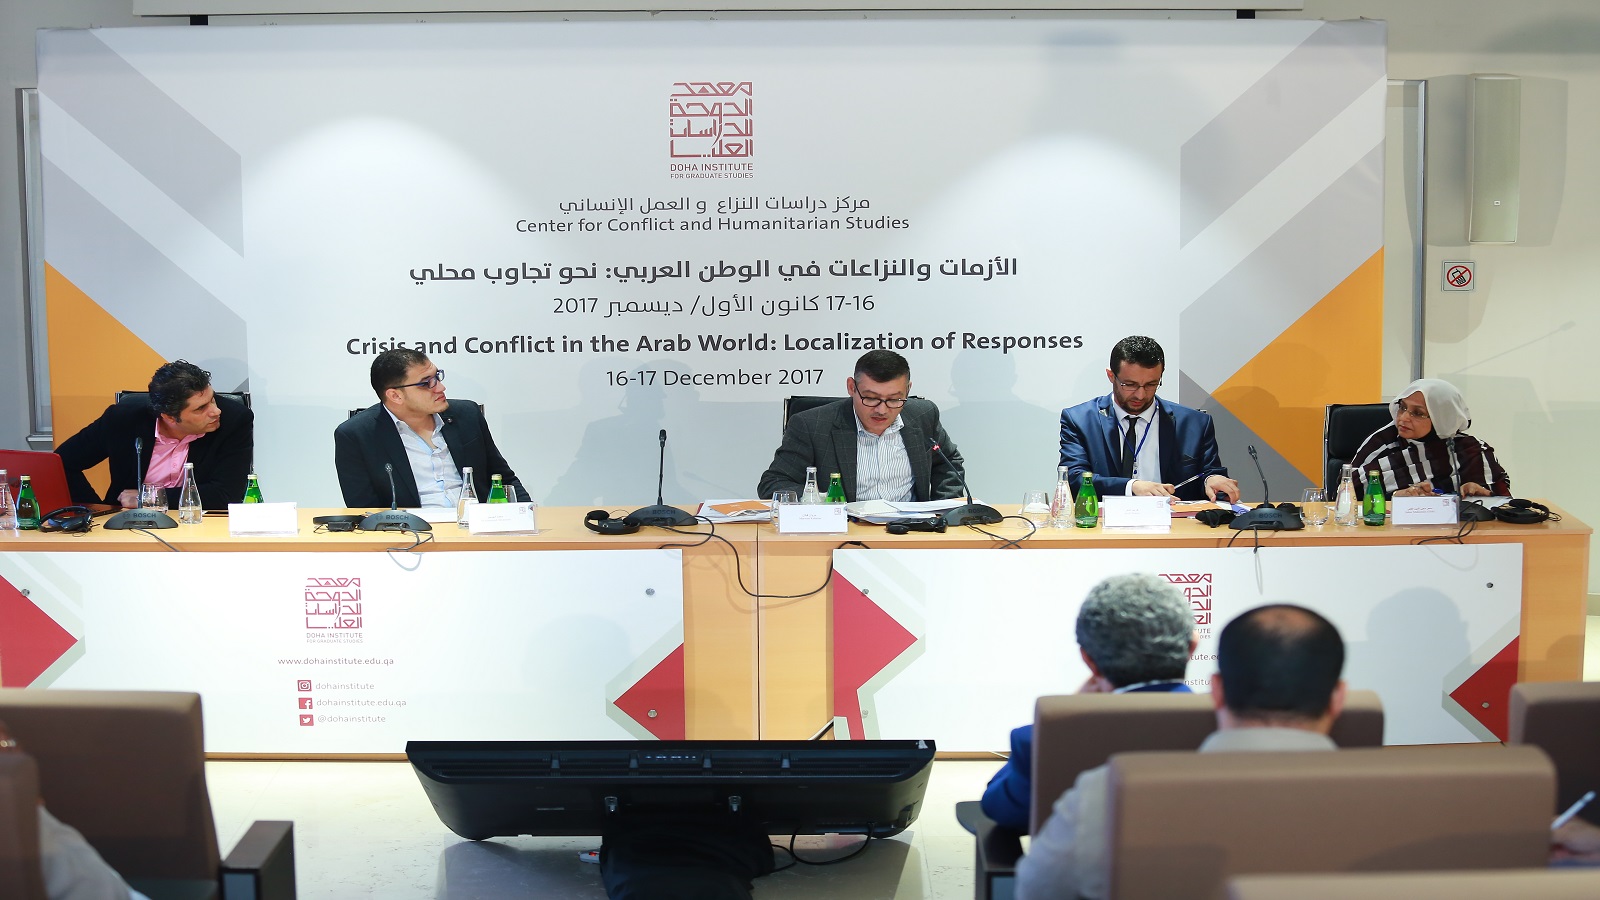 اختتام مؤتمر"الأزمات والنزاعات في الوطن العربي: نحو تجاوب محلي"